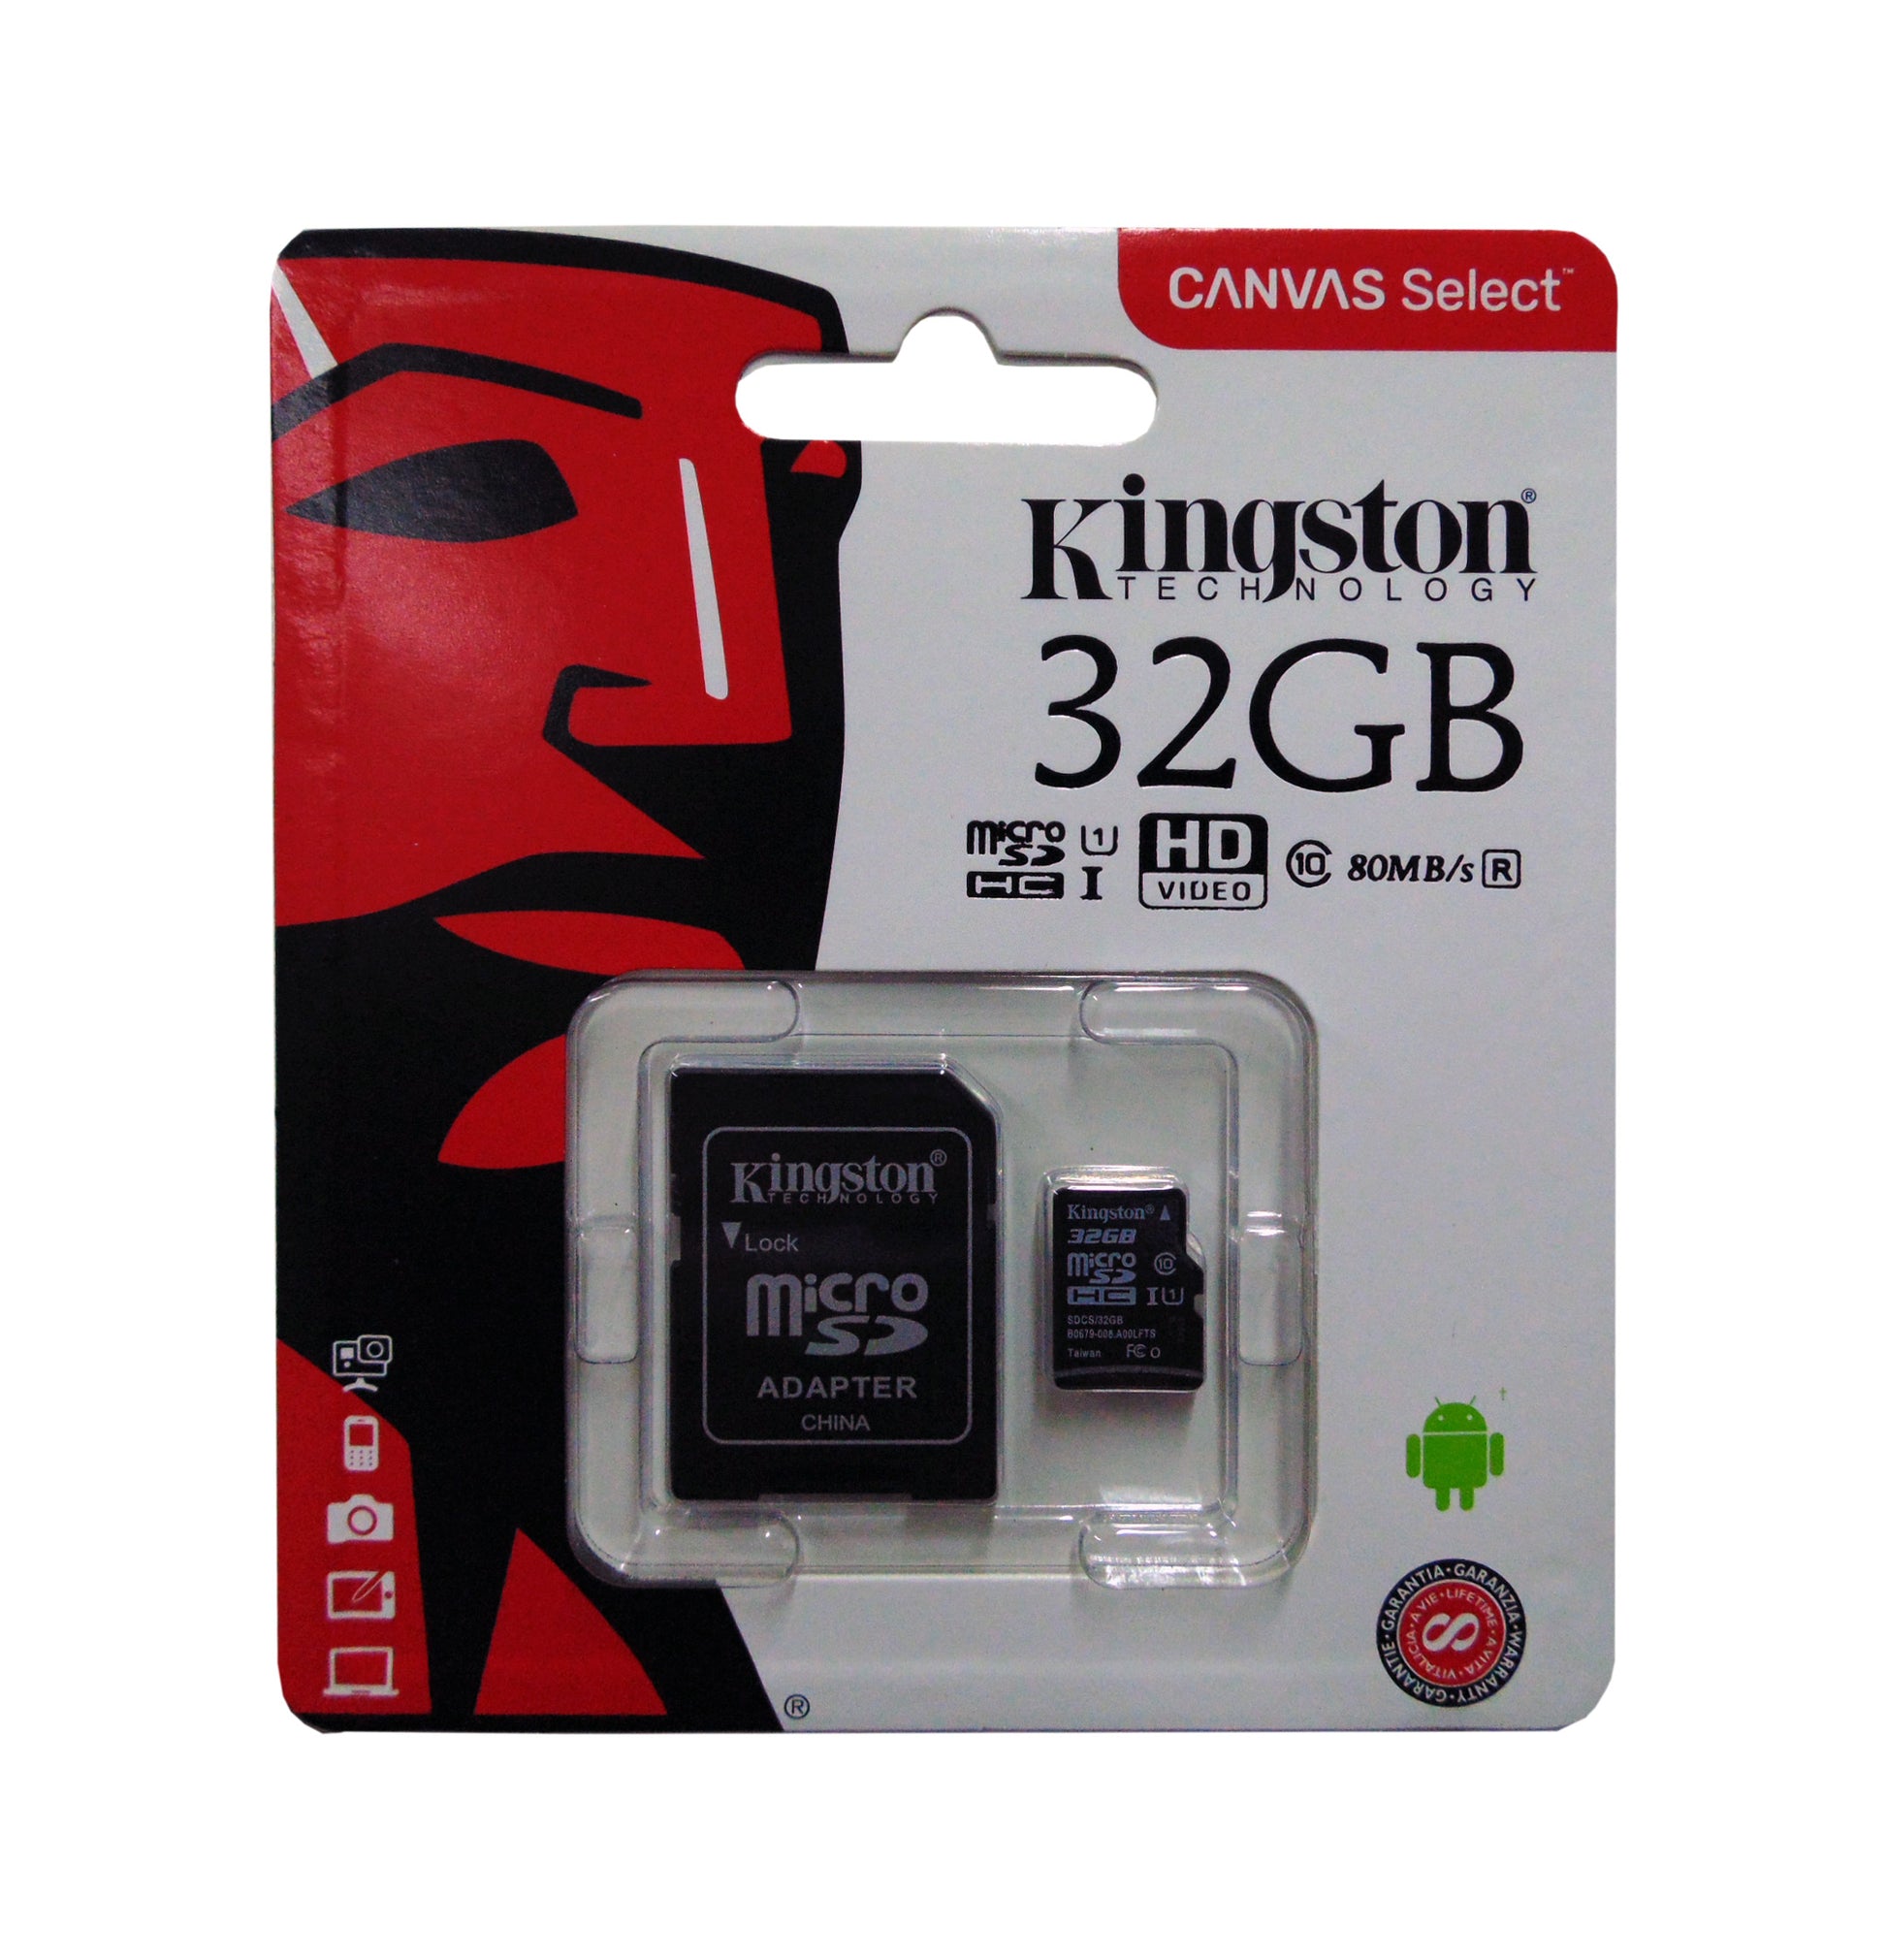 Sherlock Holmes Rama Ministro Memoria Micro SD Kingston SDHC 32GB Clase 10 con adaptador – Beacon212